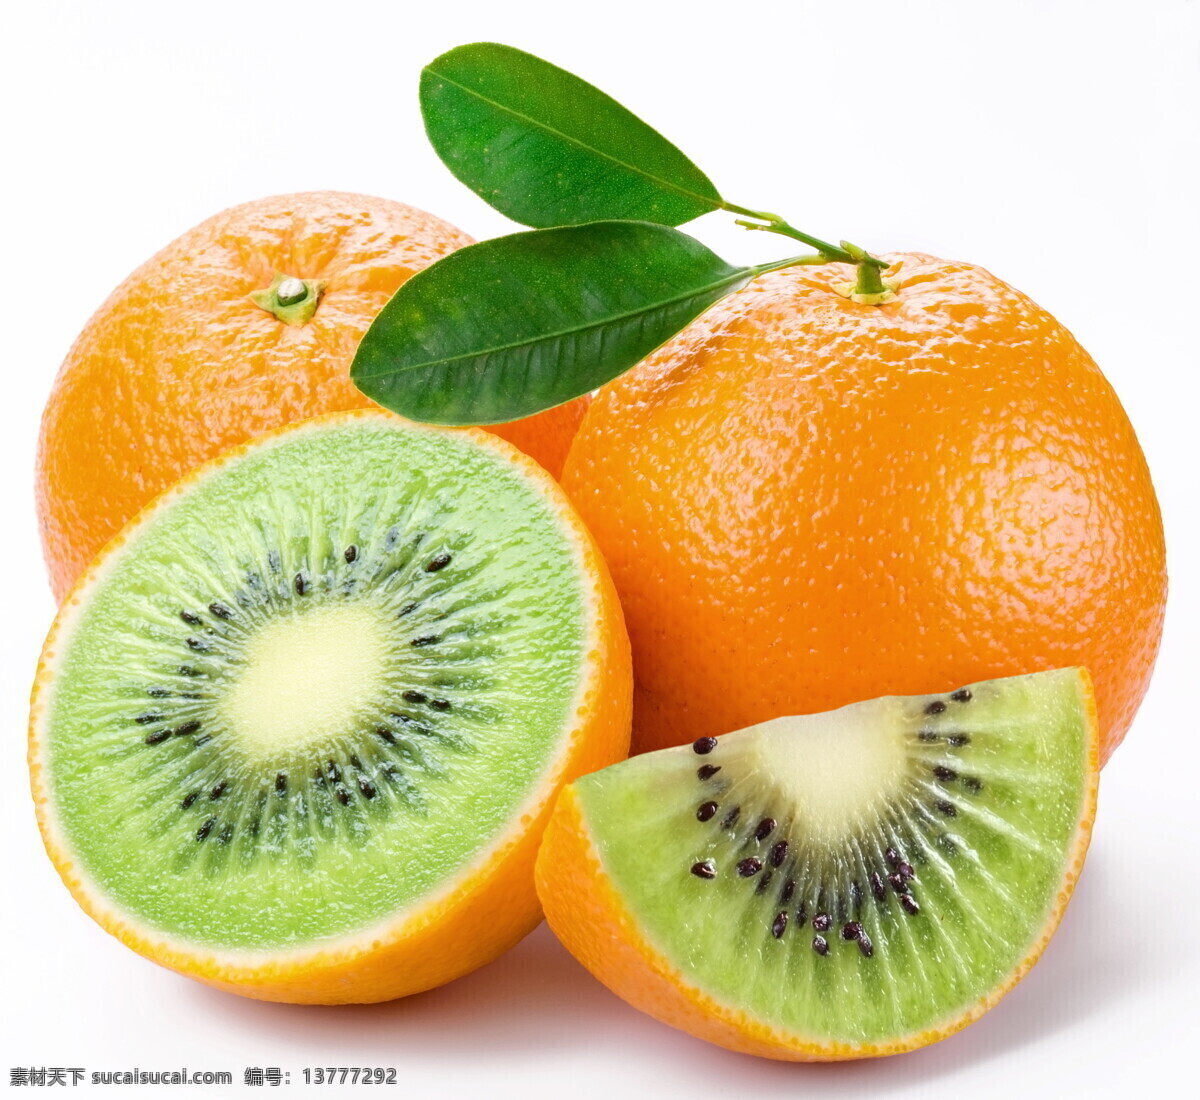 创意 水果 橙子 创意水果 果实 猕猴桃 生物世界 蔬果 设计素材 模板下载 psd源文件